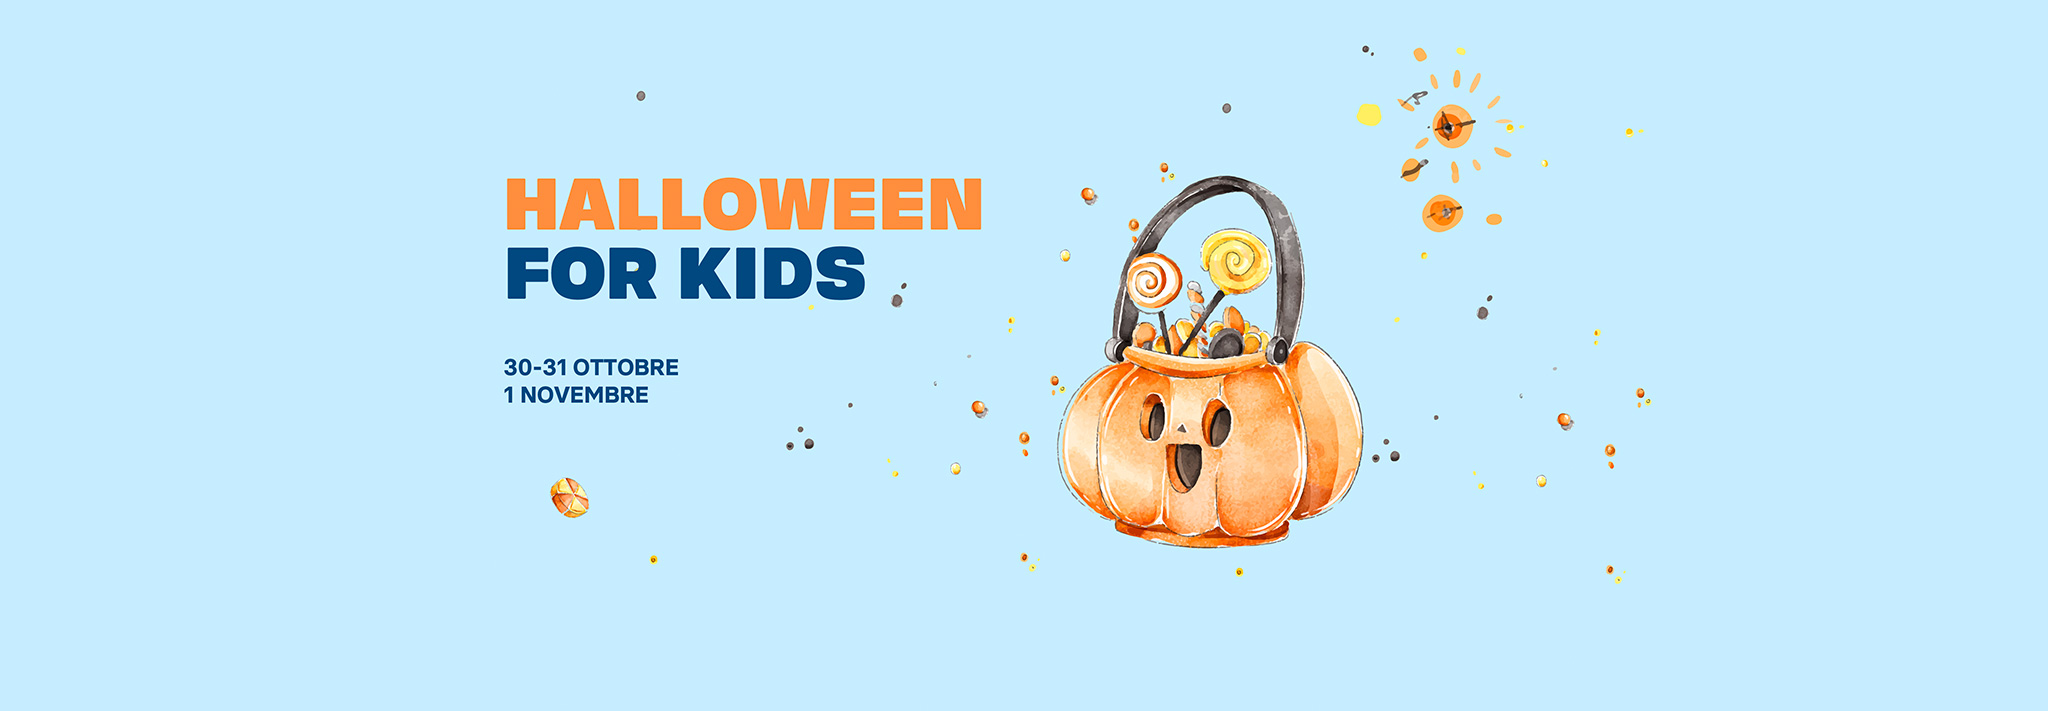 Al momento stai visualizzando Halloween for kids